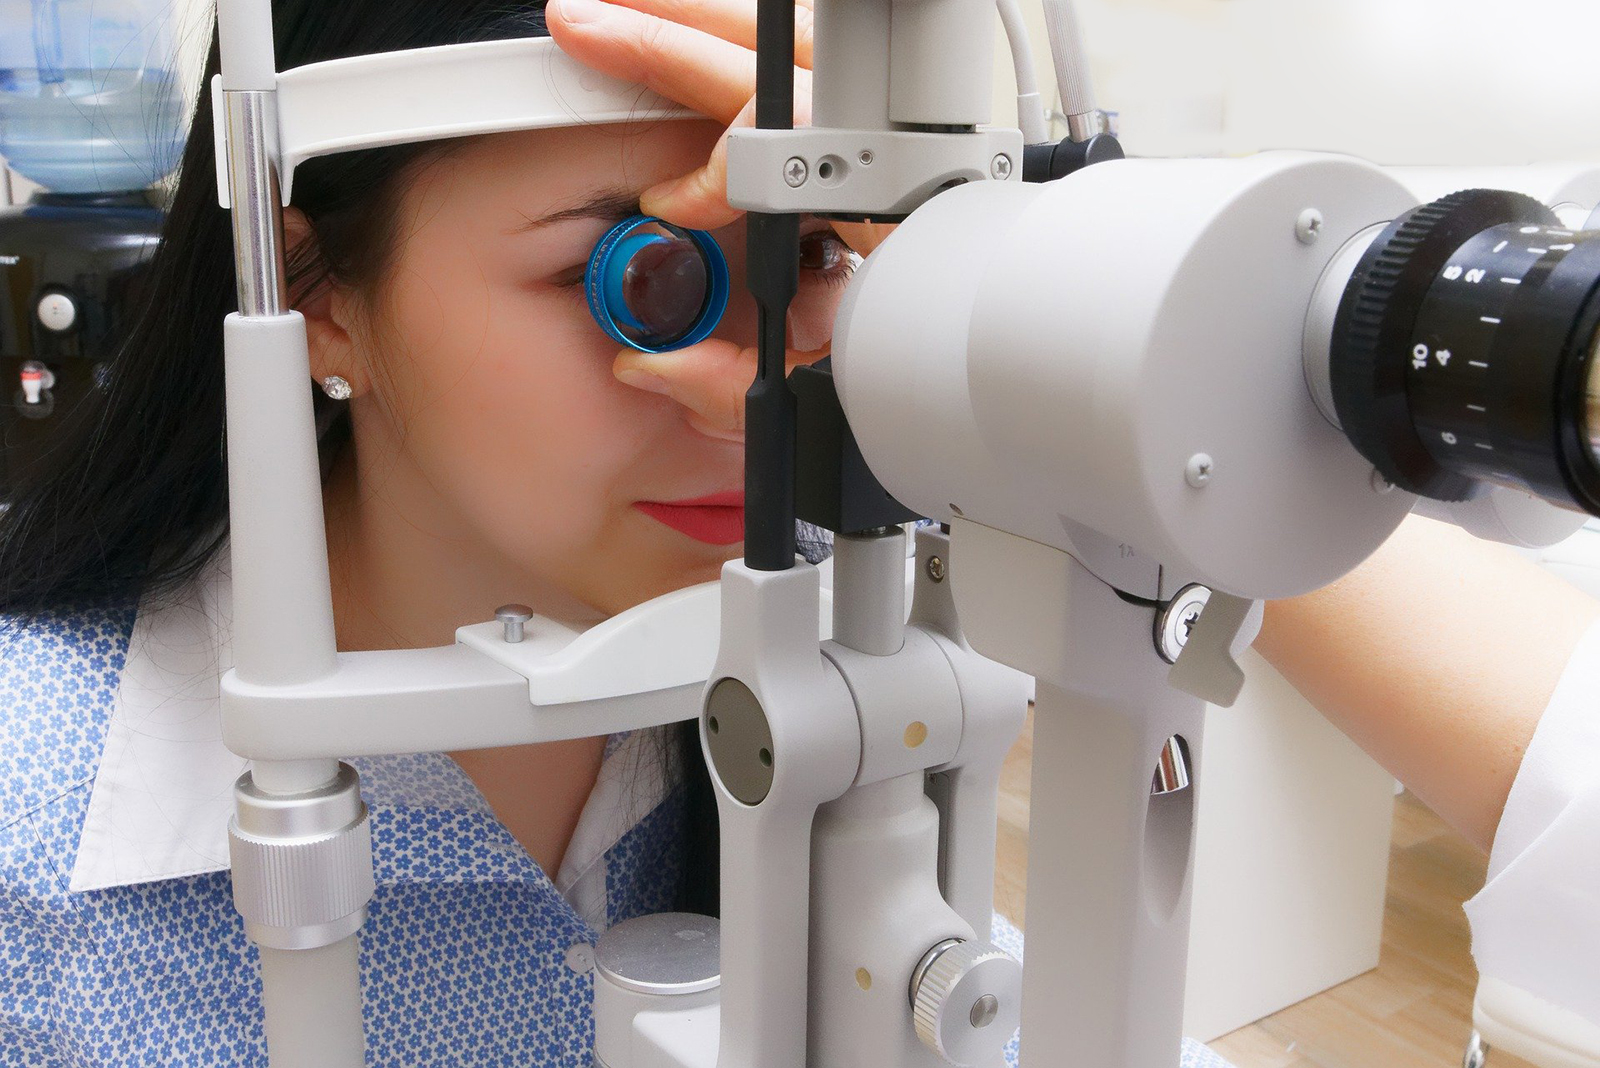 眼の検査